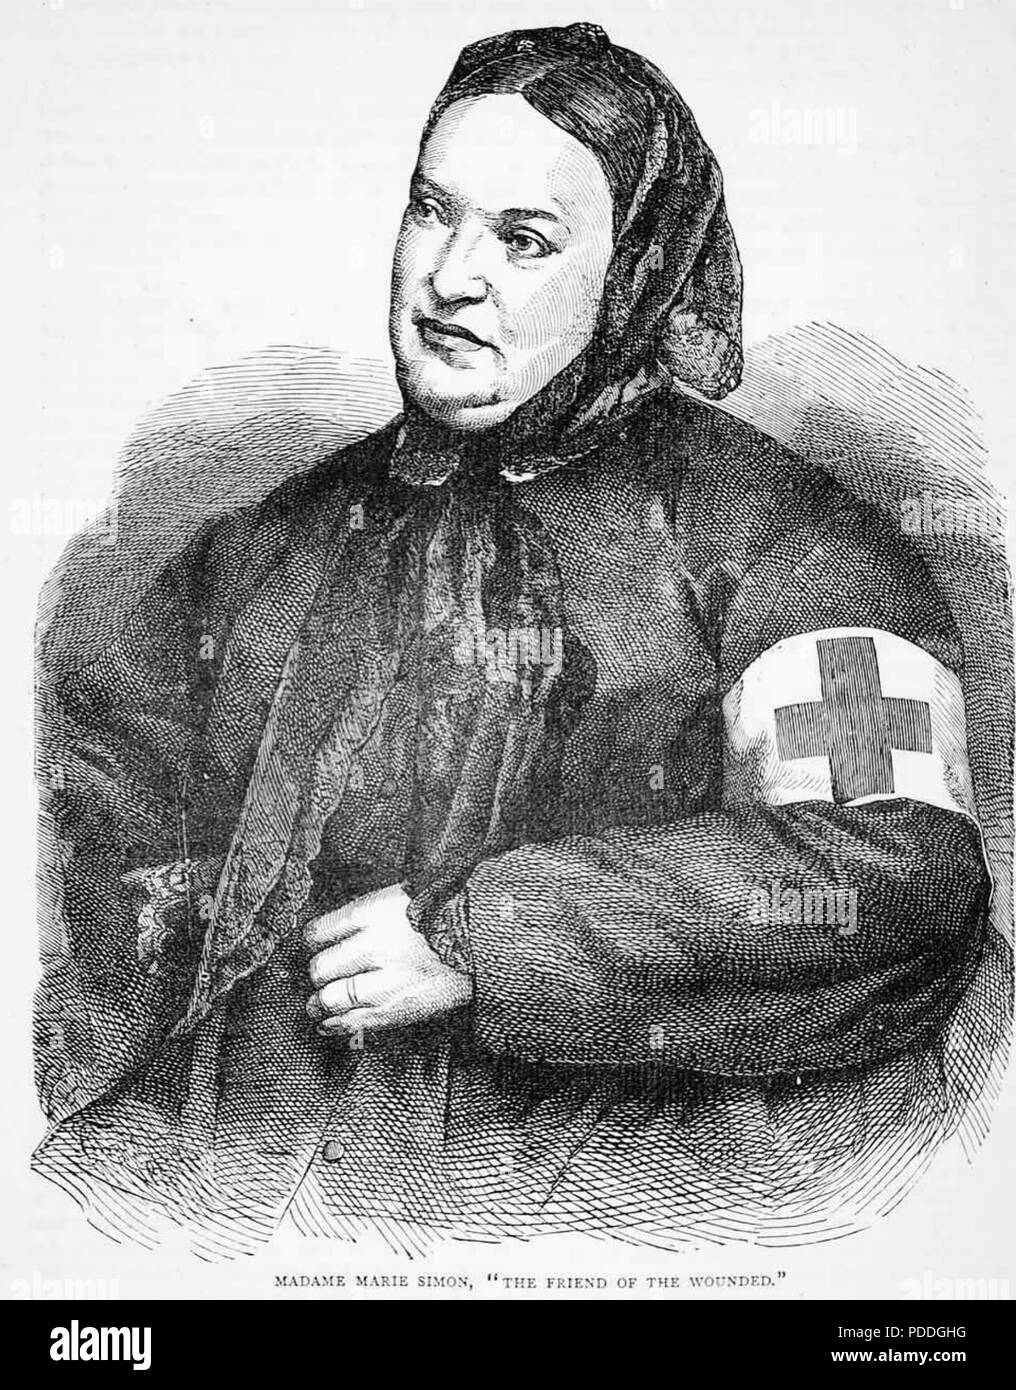 MARIE SIMON französische Krankenschwester während des Deutsch-Französischen Krieges von 1870/71 Stockfoto